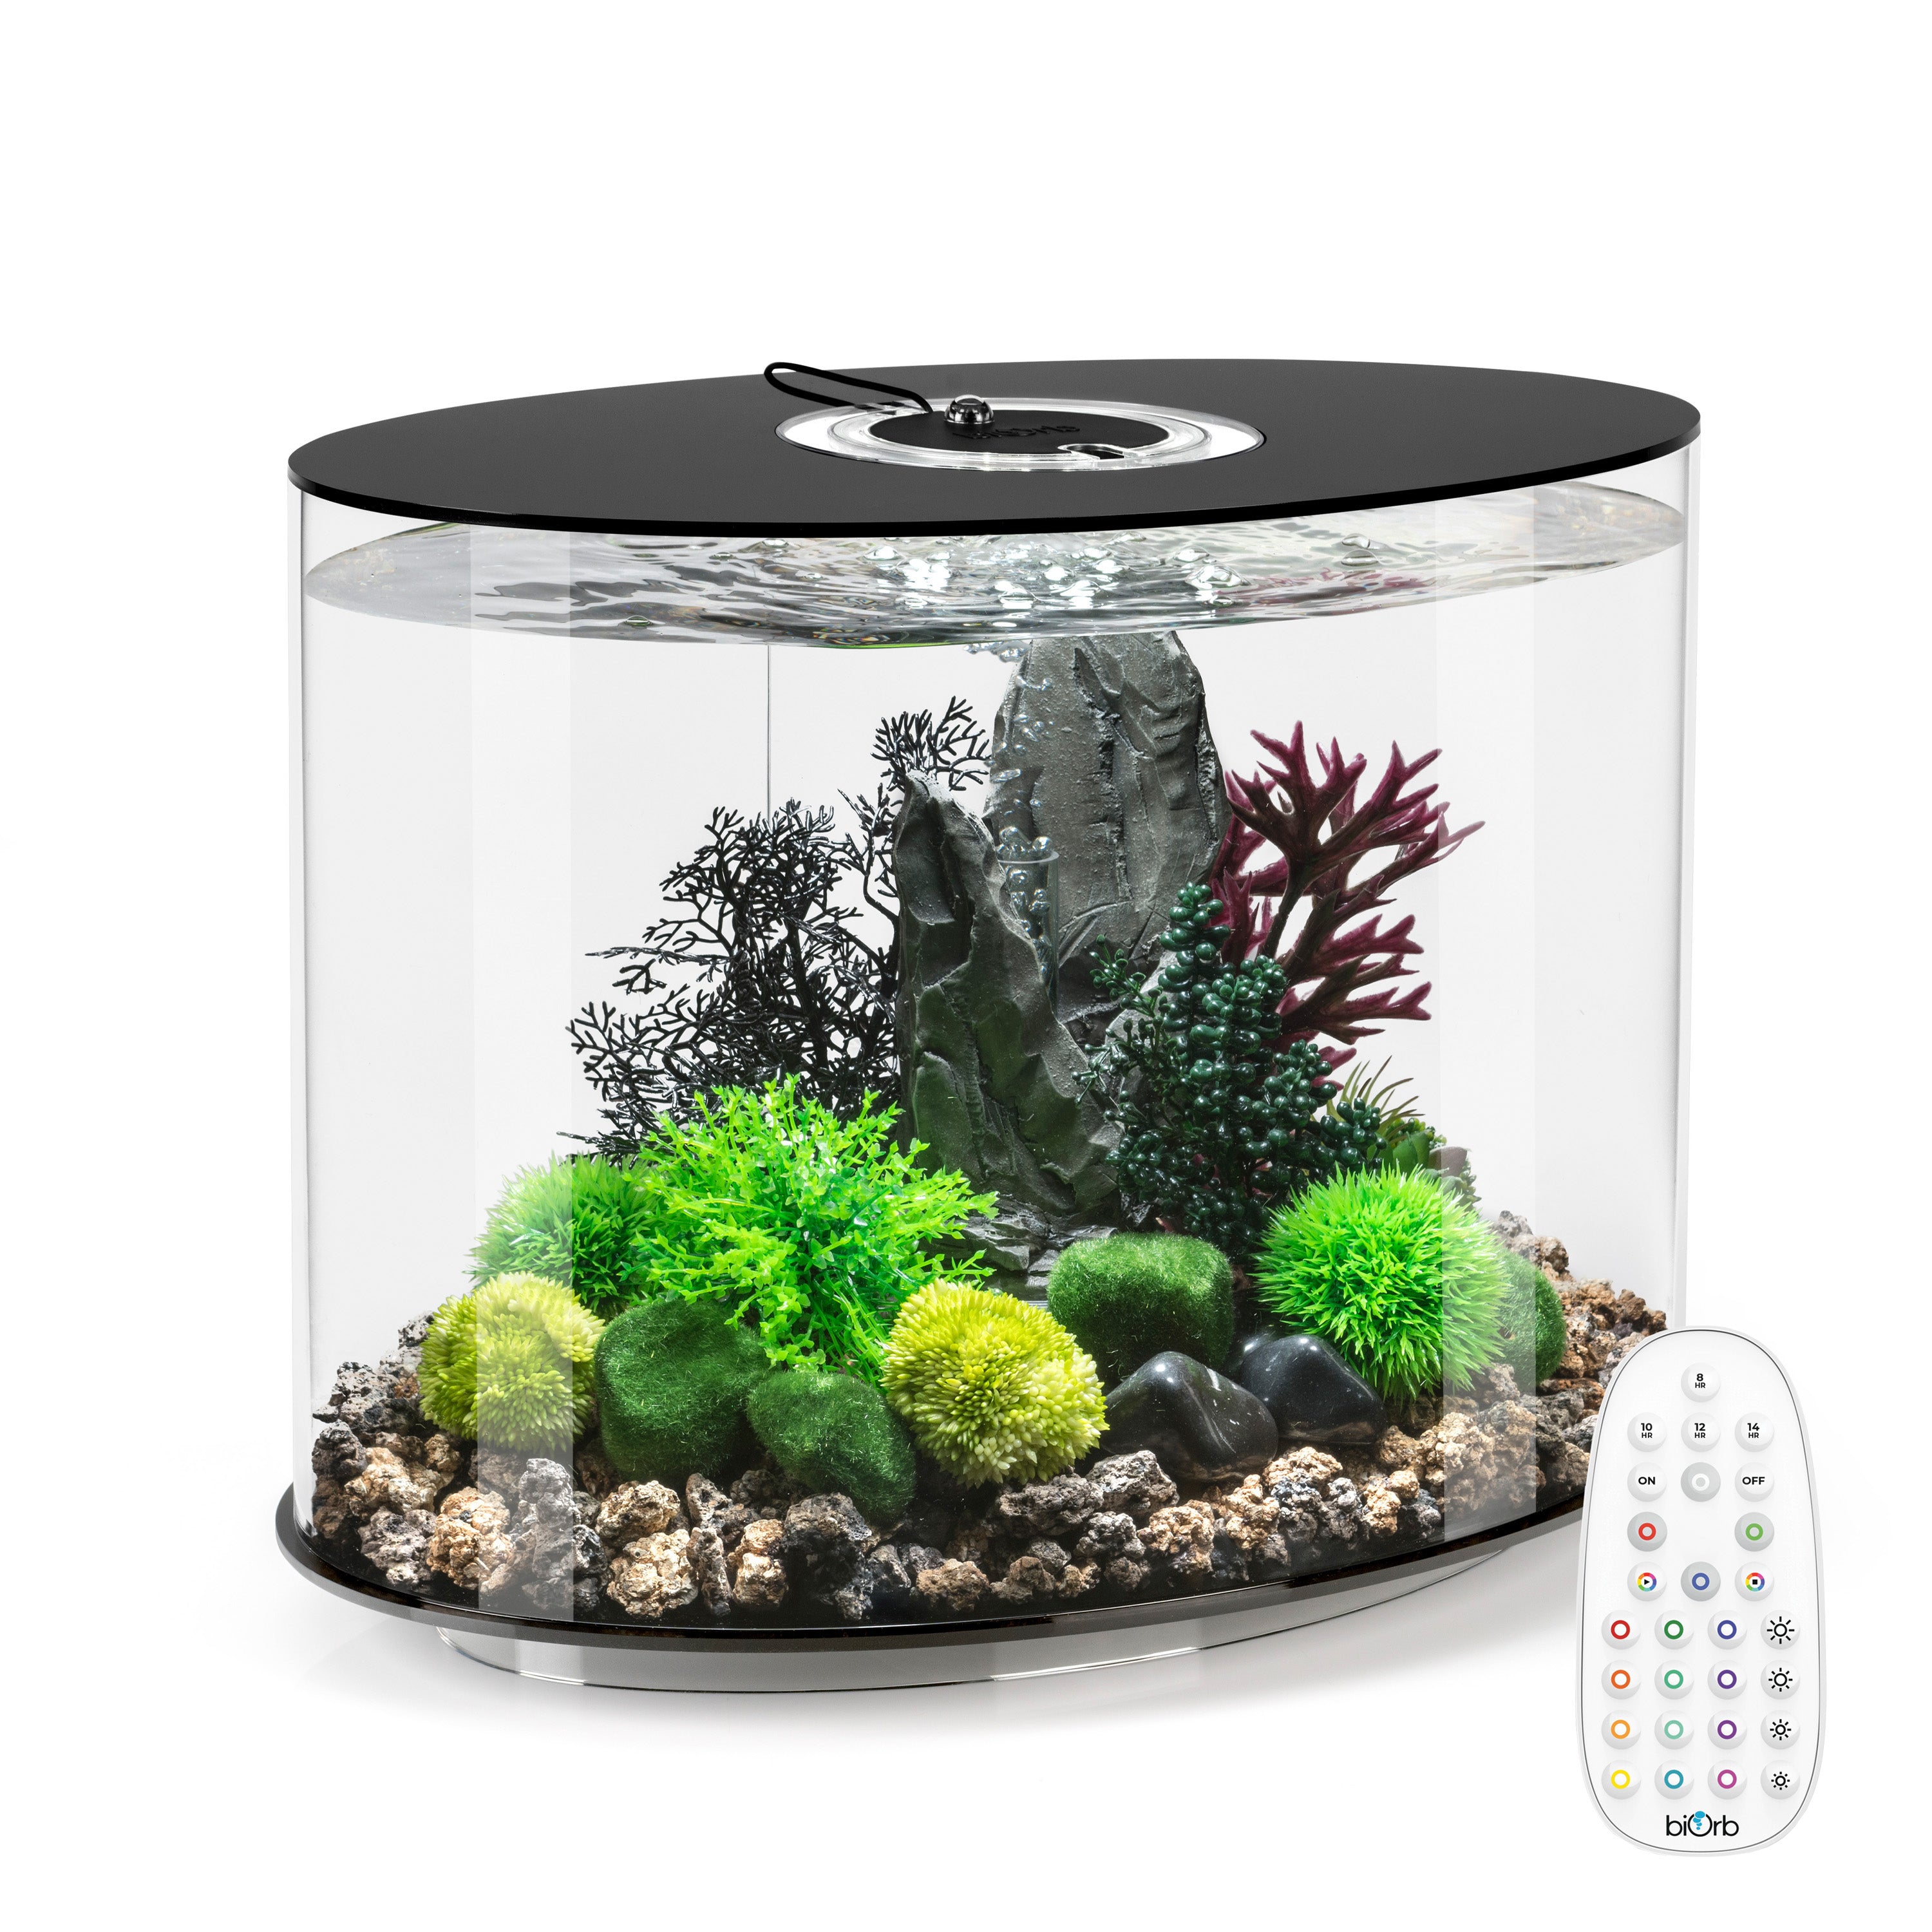 LOOP 30 Aquarium with MCR Light - 8 gallon - Black